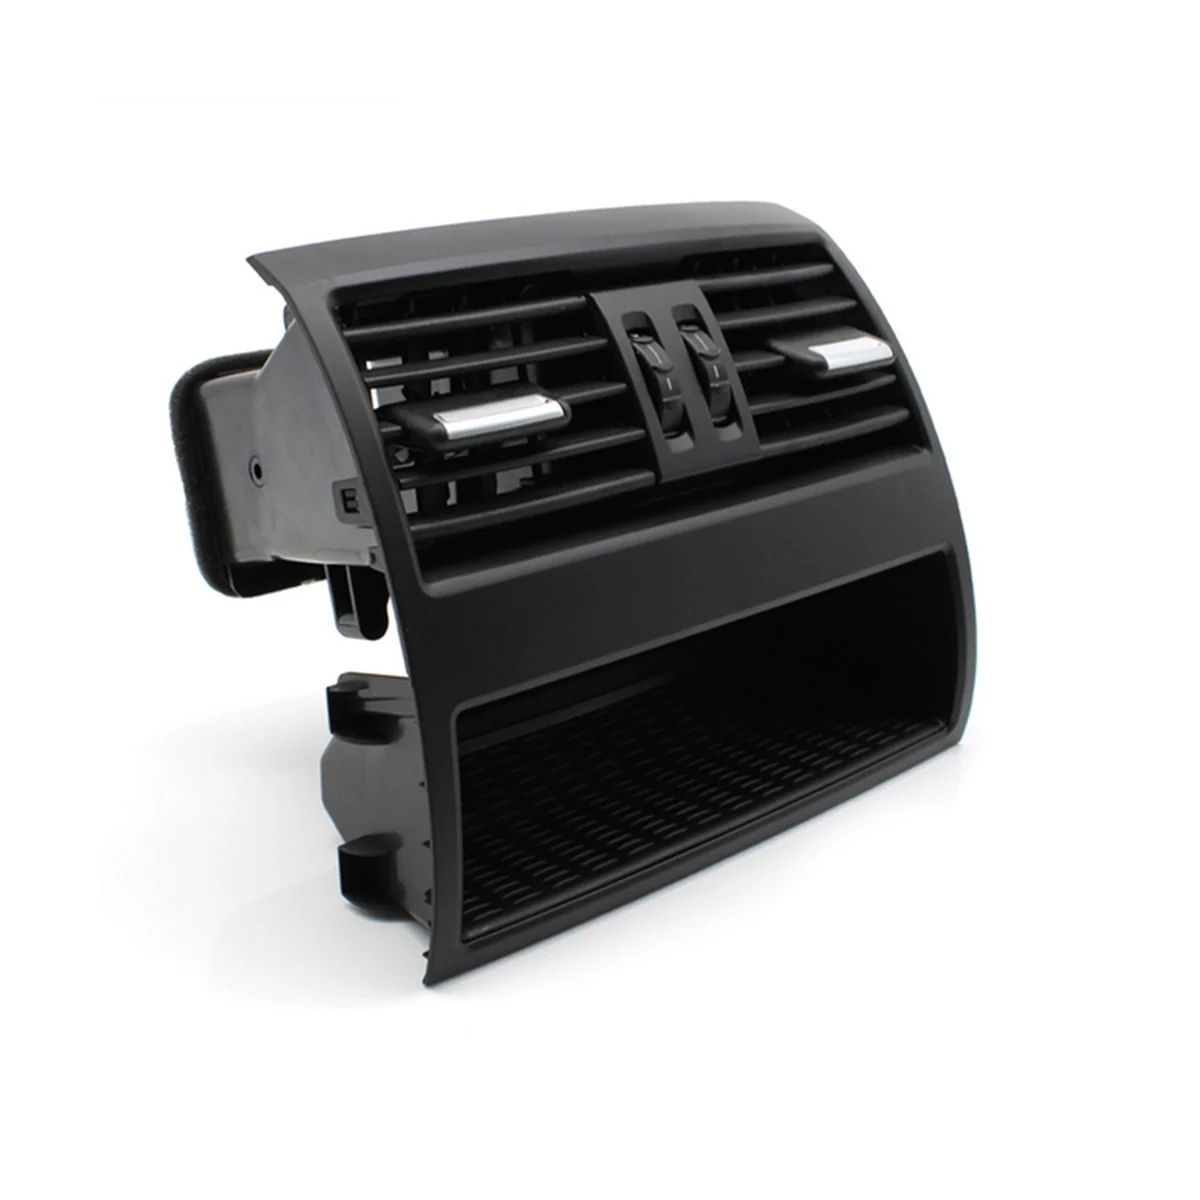 

Консоль заднего кондиционера, Вентиляционная решетка для свежего воздуха, запчасти для BMW 5 серии F10 F11 64229172167 (черная)